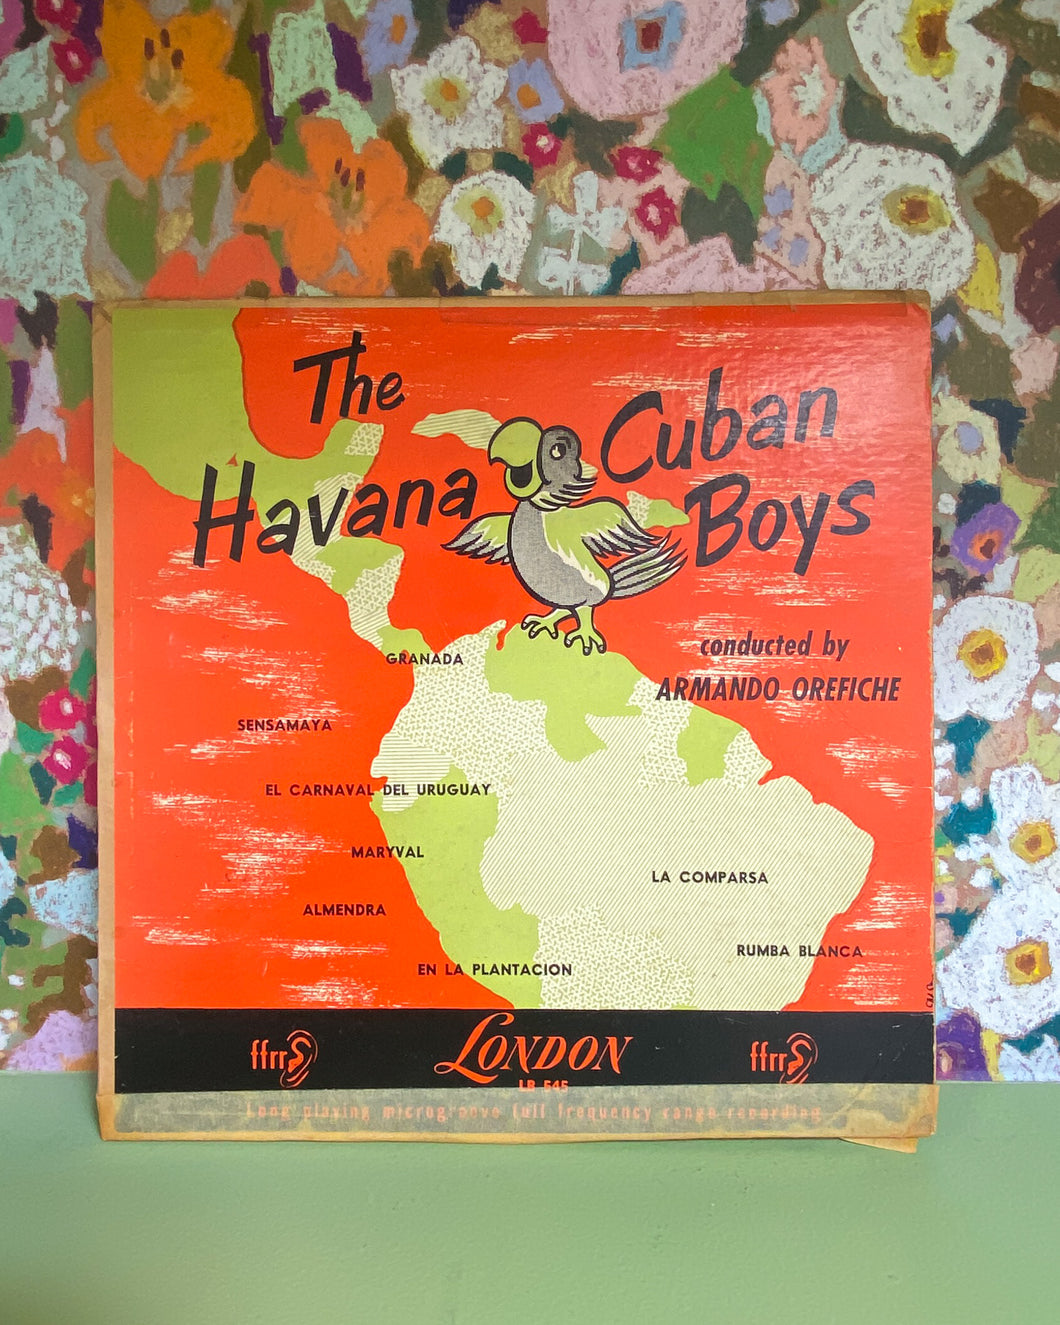 The Havana Cuban Boys